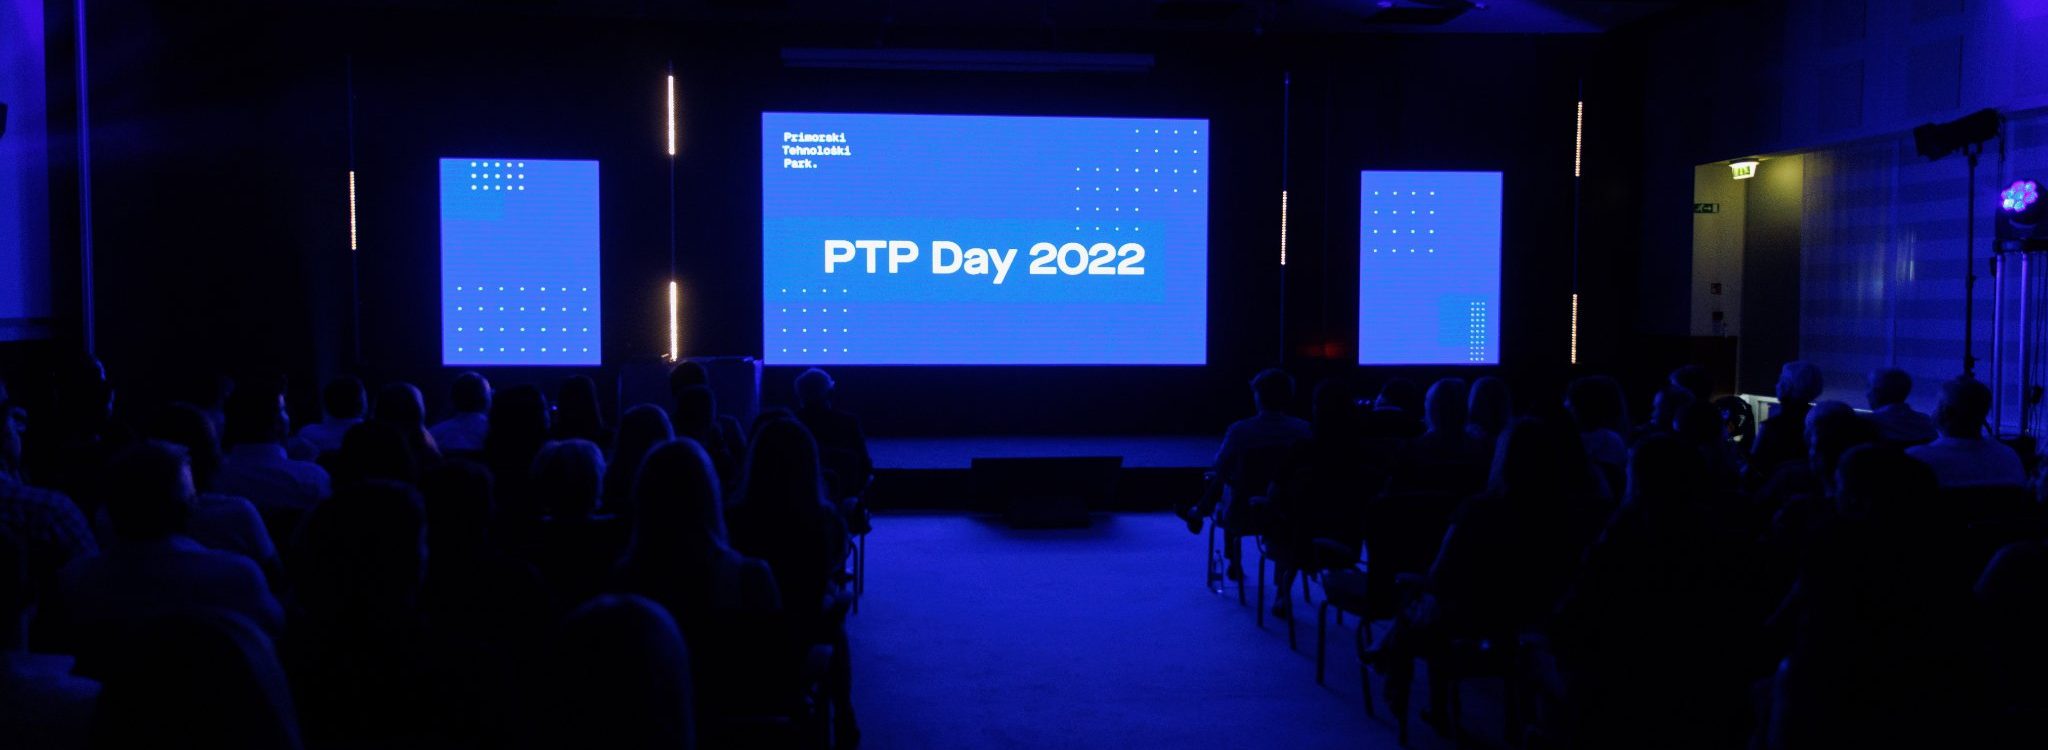 Organizacija dogodkov: PTP Day 2022